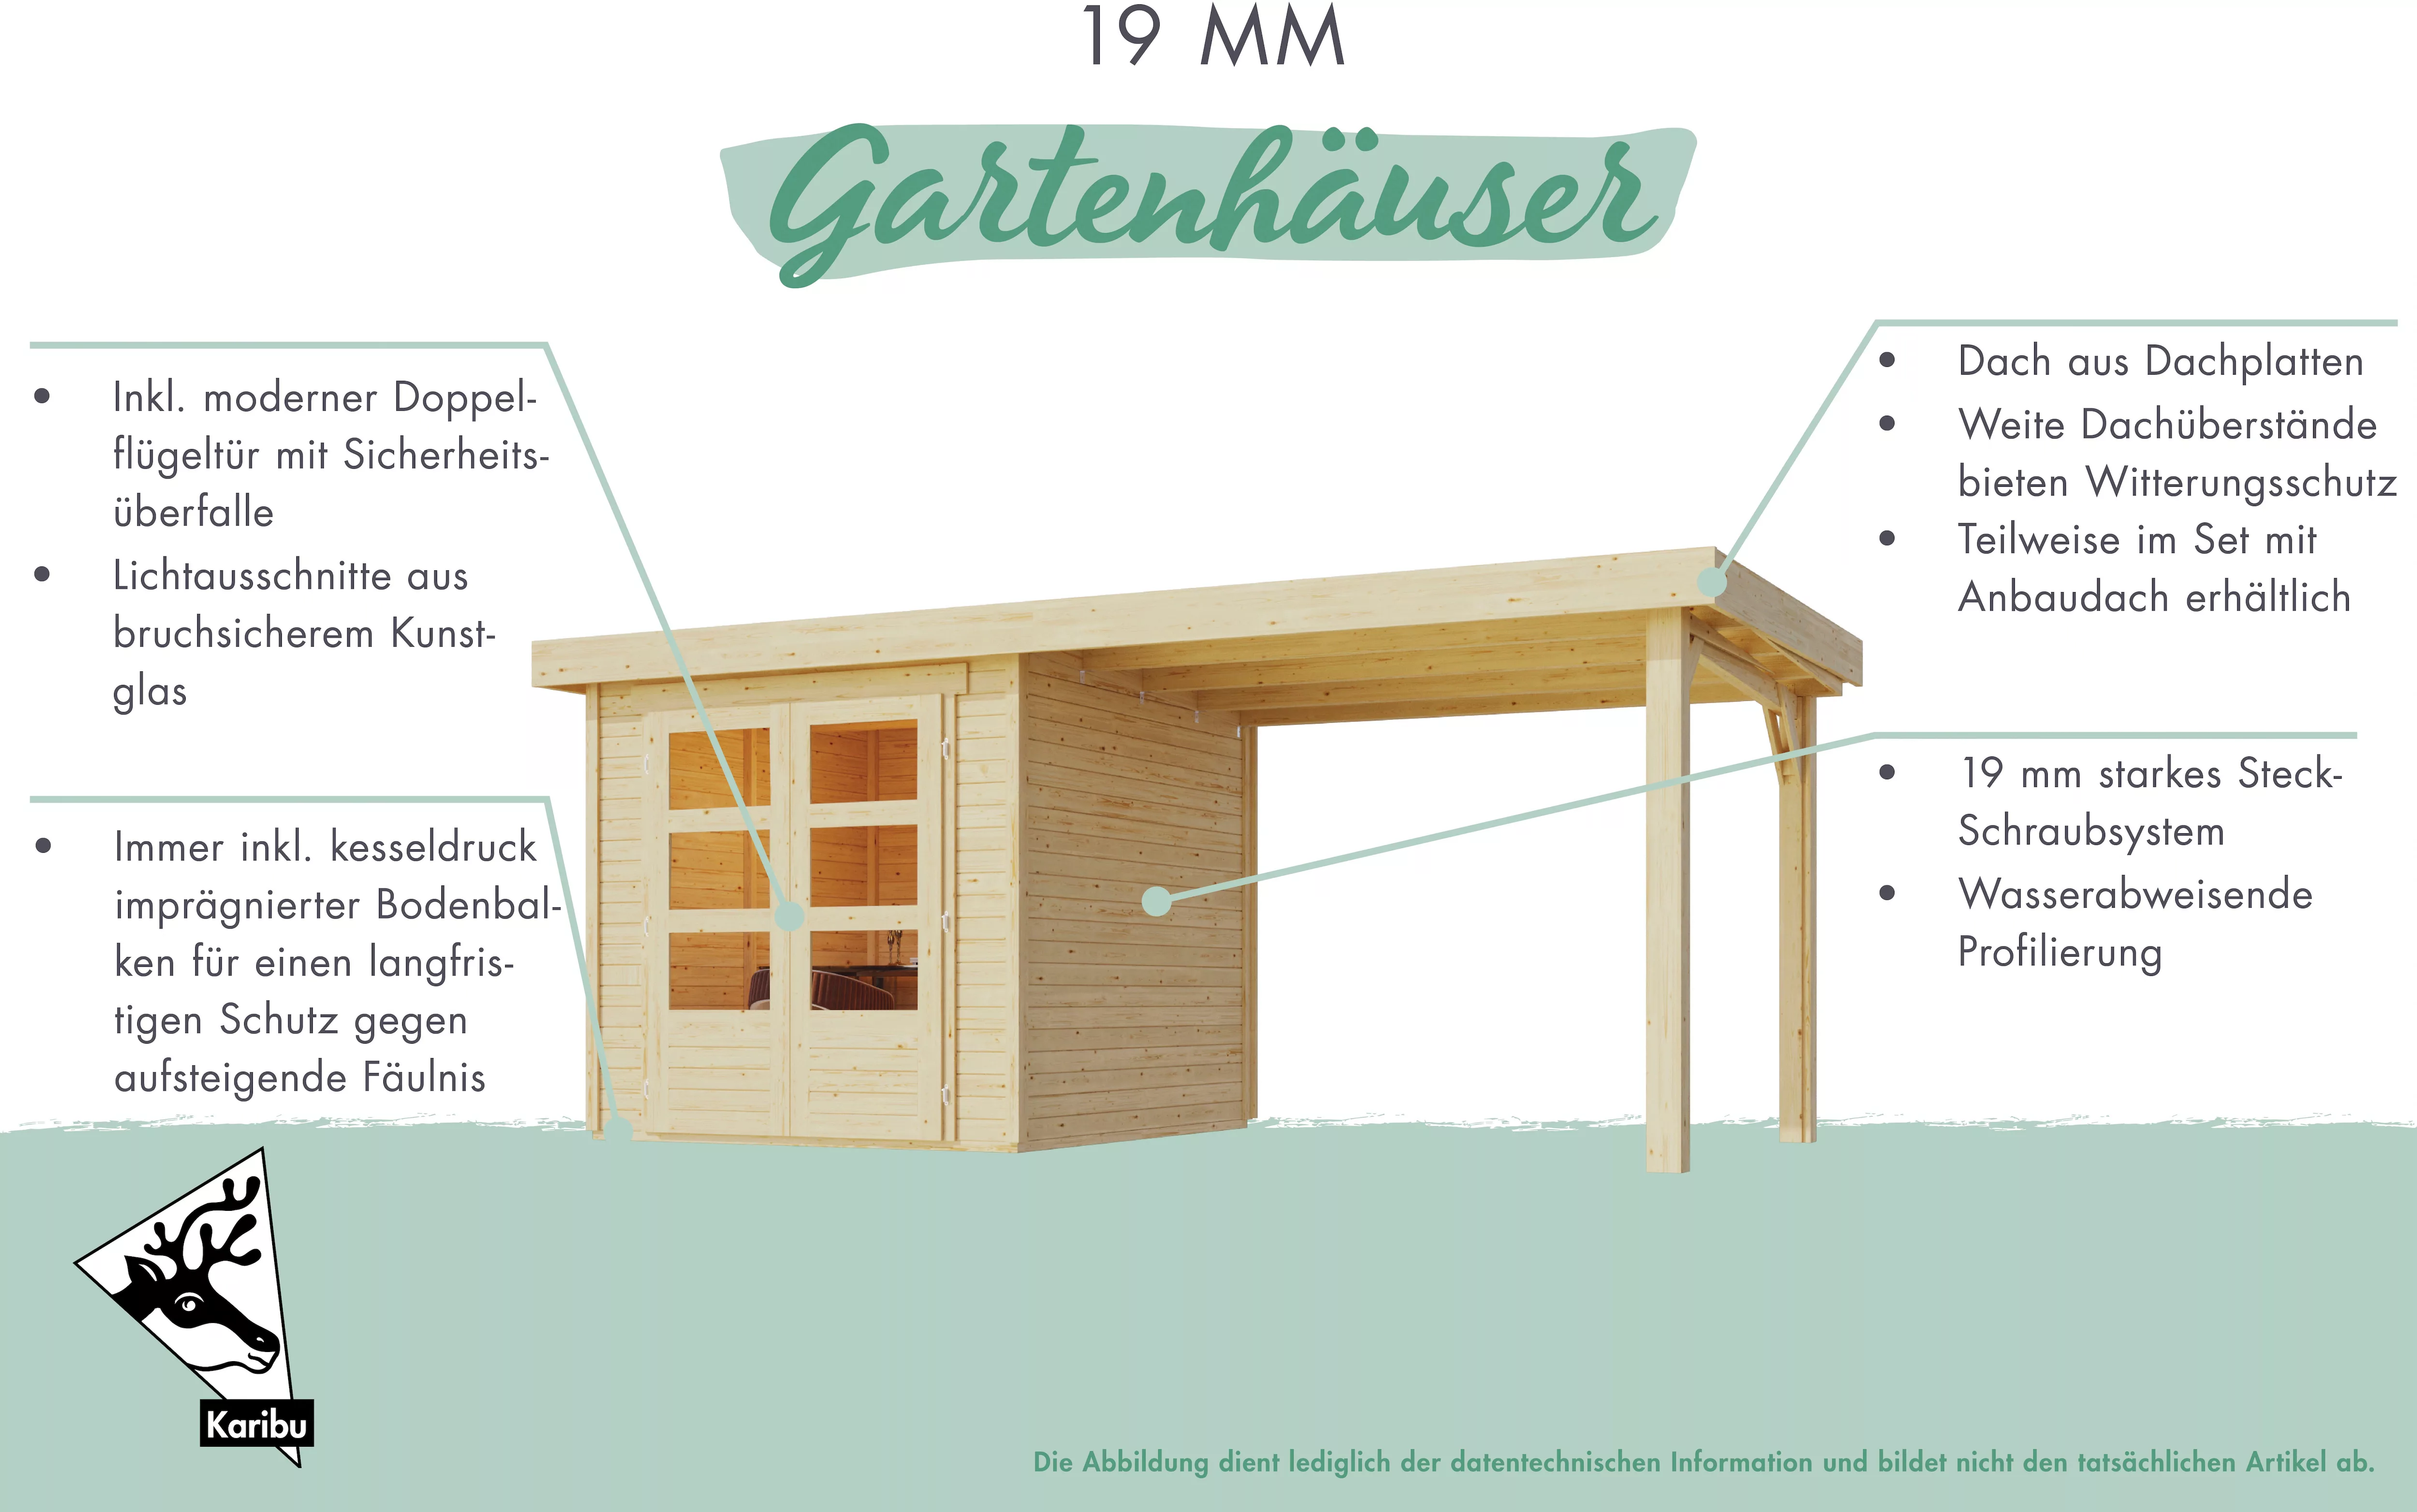 Karibu Gartenhaus "Verkaufshaus 1 naturbelassen", aus hochwertiger nordisch günstig online kaufen